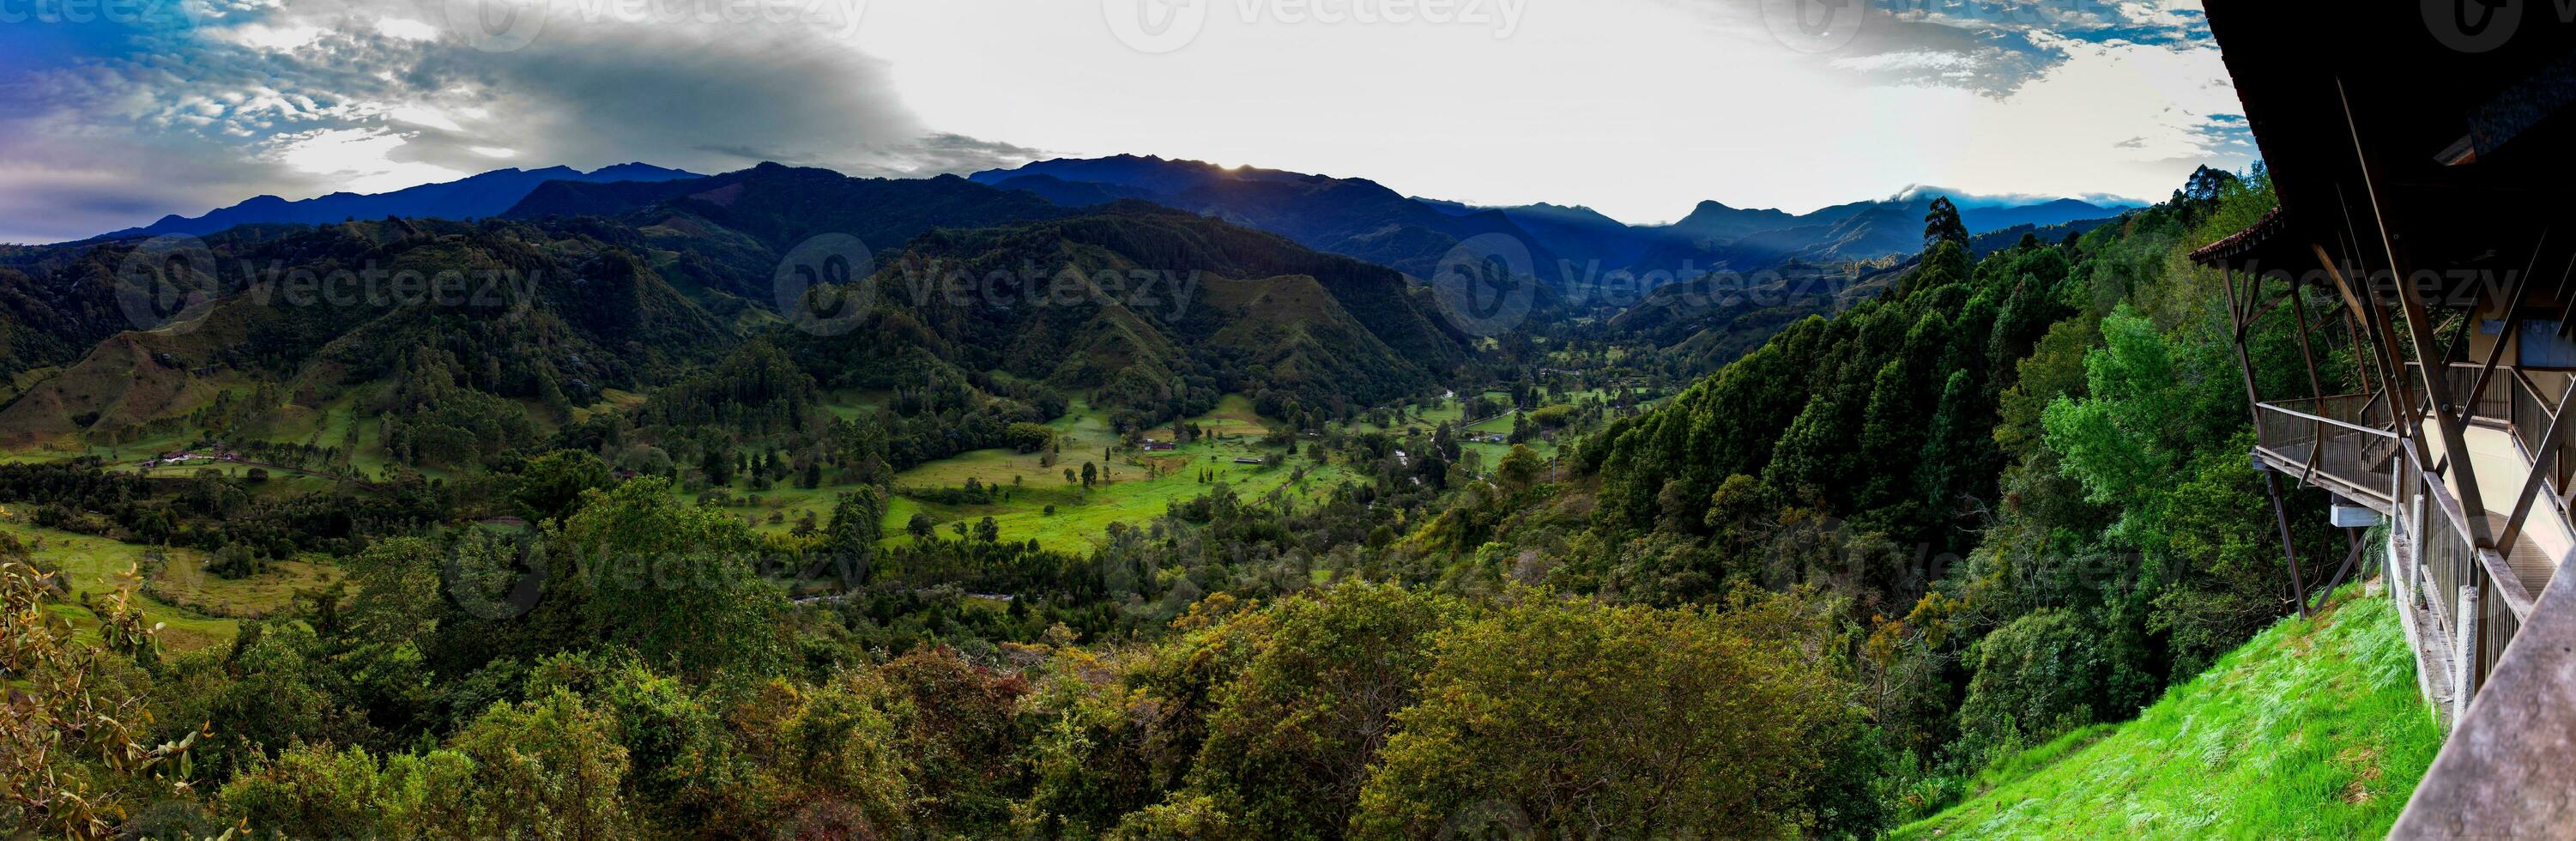 panorama de le magnifique vue plus de le cocora vallée dans salento, de el mirador, situé sur le Région de quindio dans Colombie photo